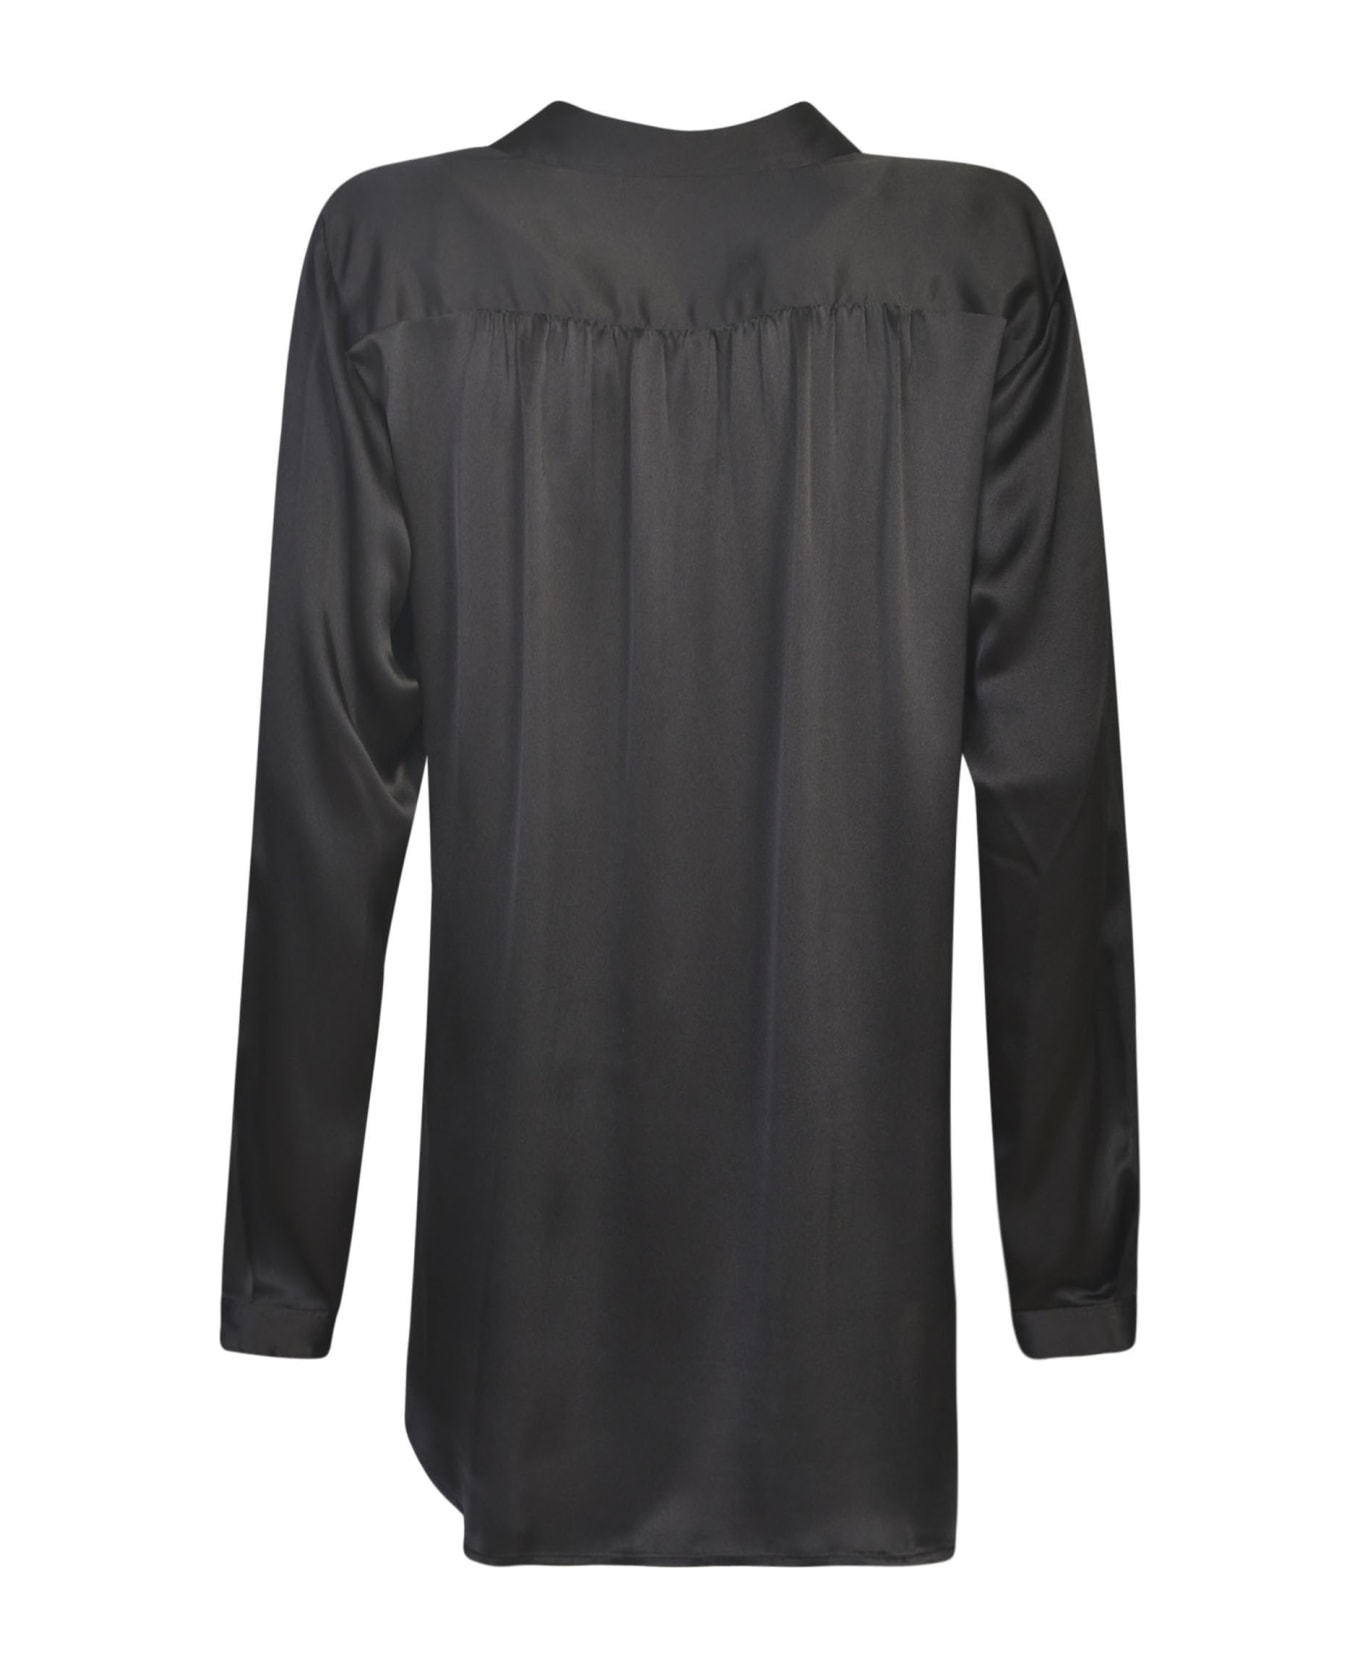 Parosh Long-sleeved Shirt - Black